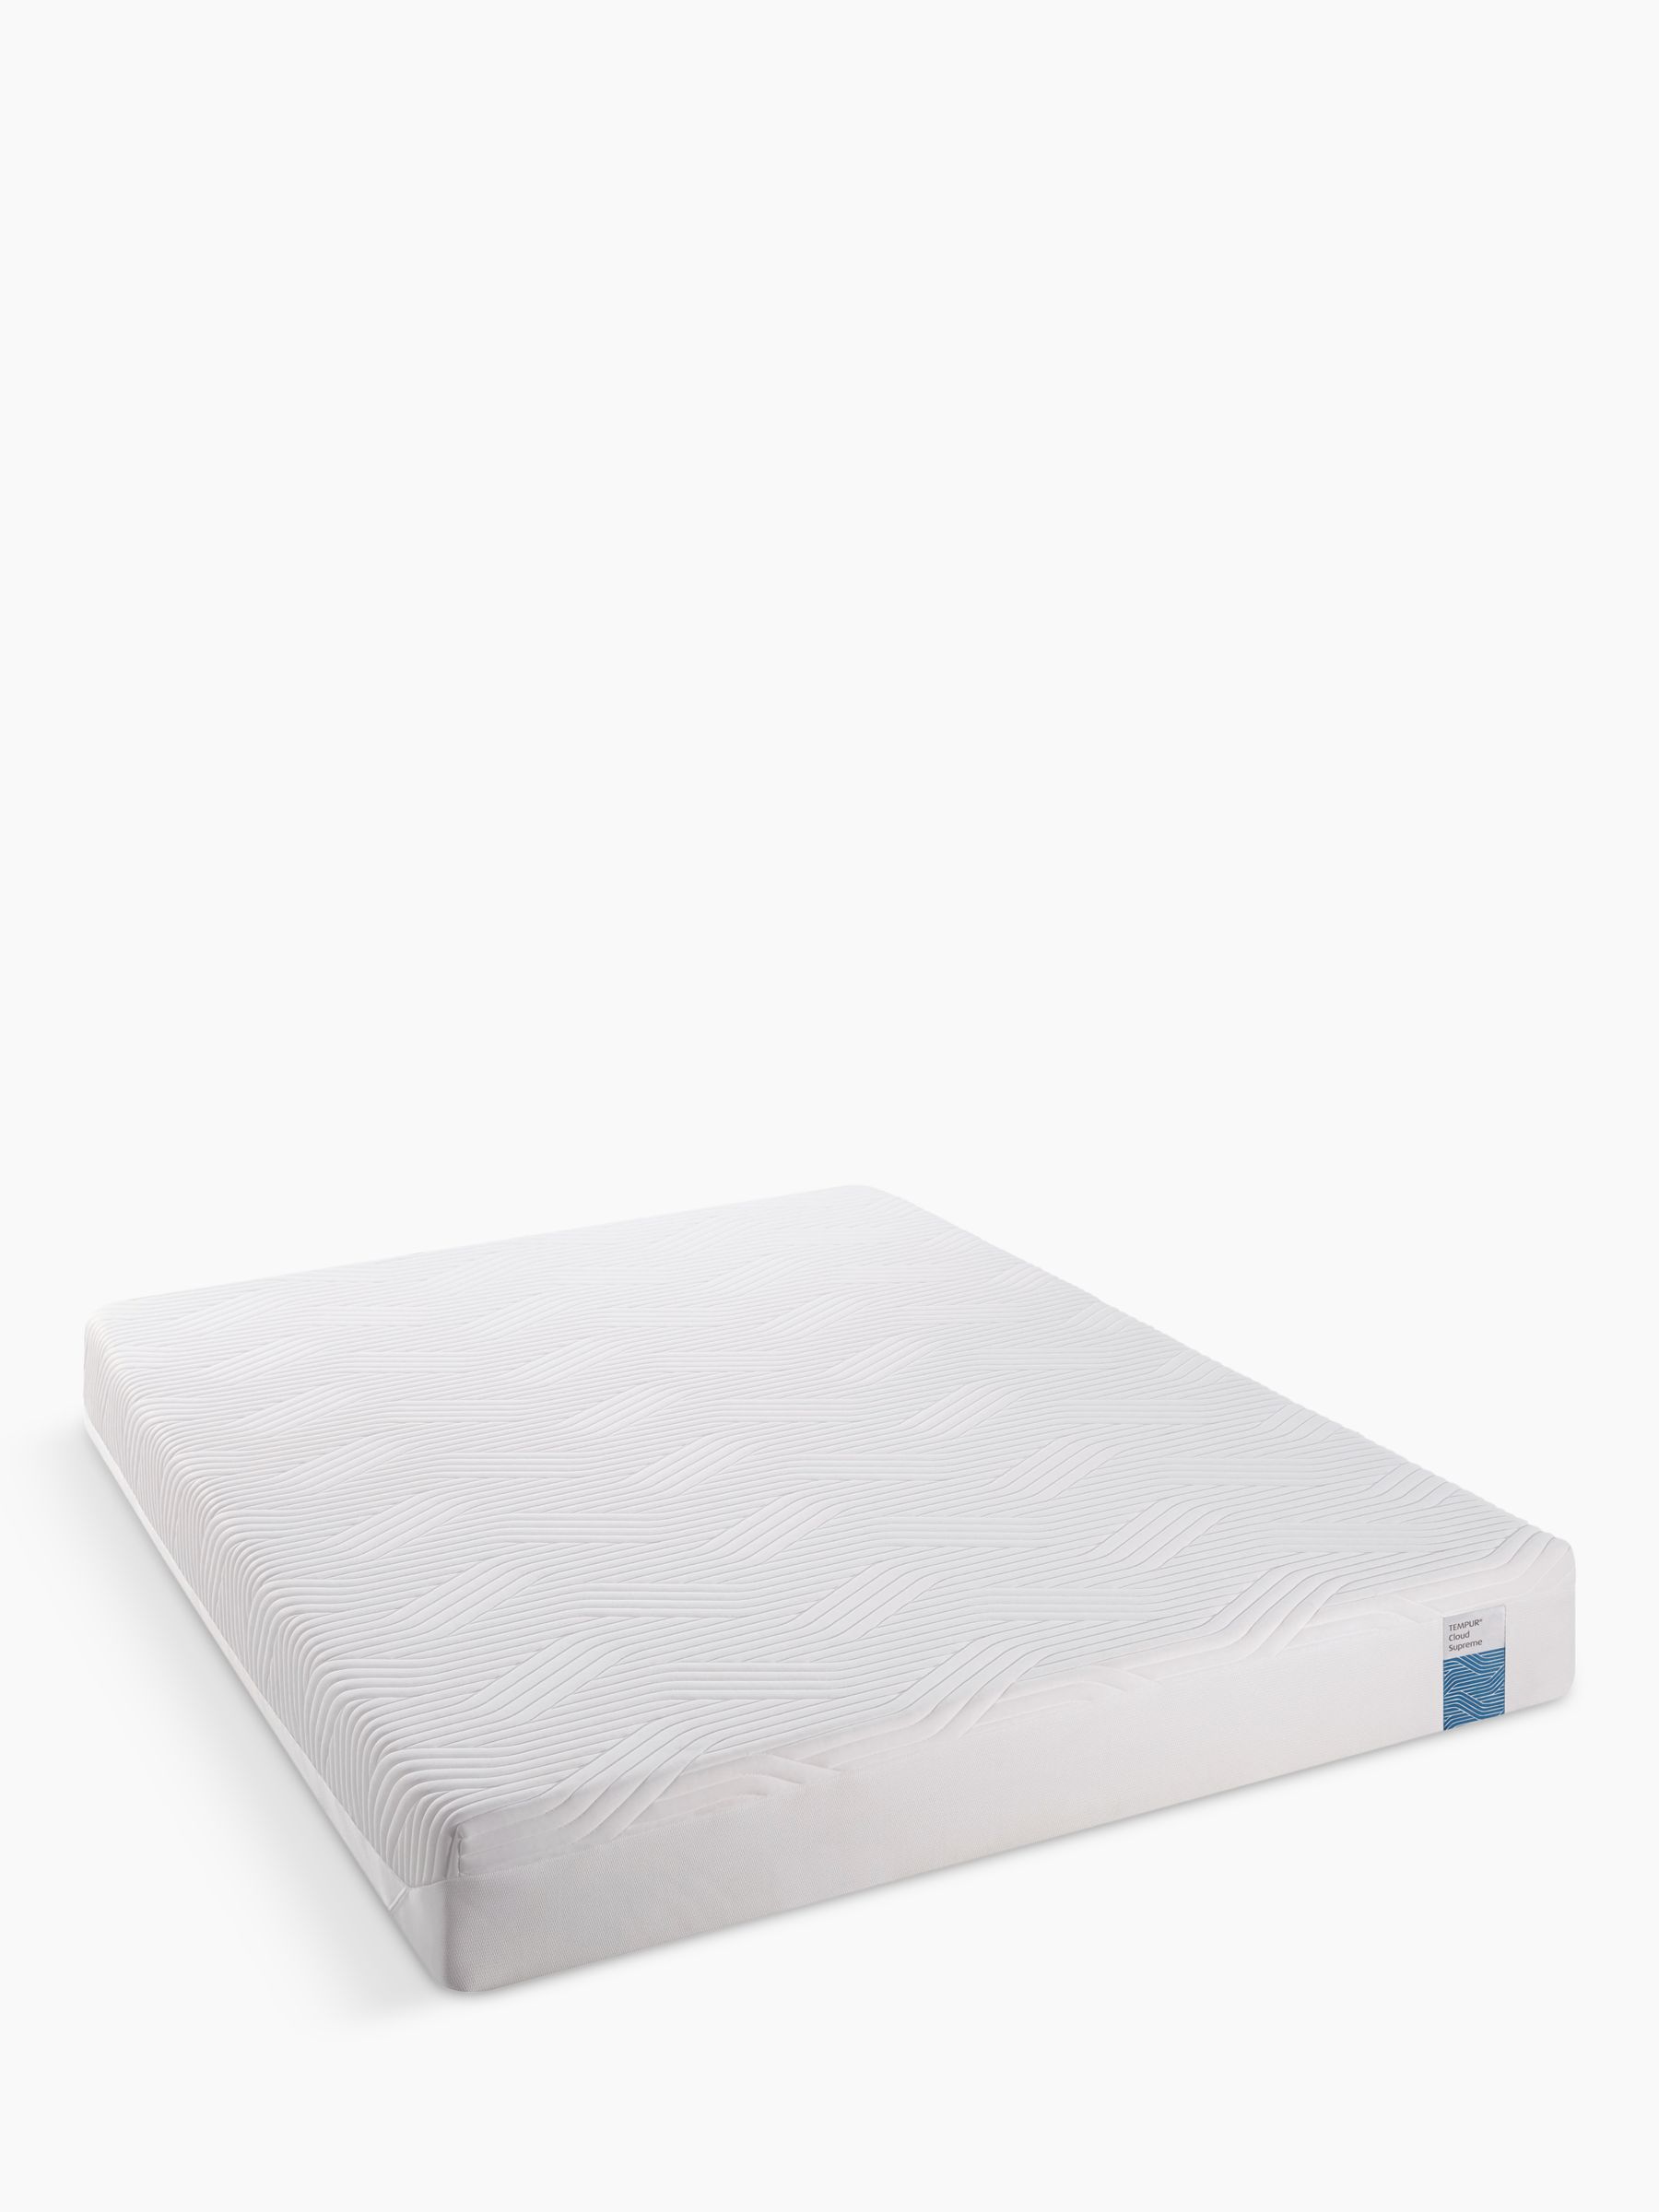 Photo of Tempur® cloud supreme memory foam mattress soft king size